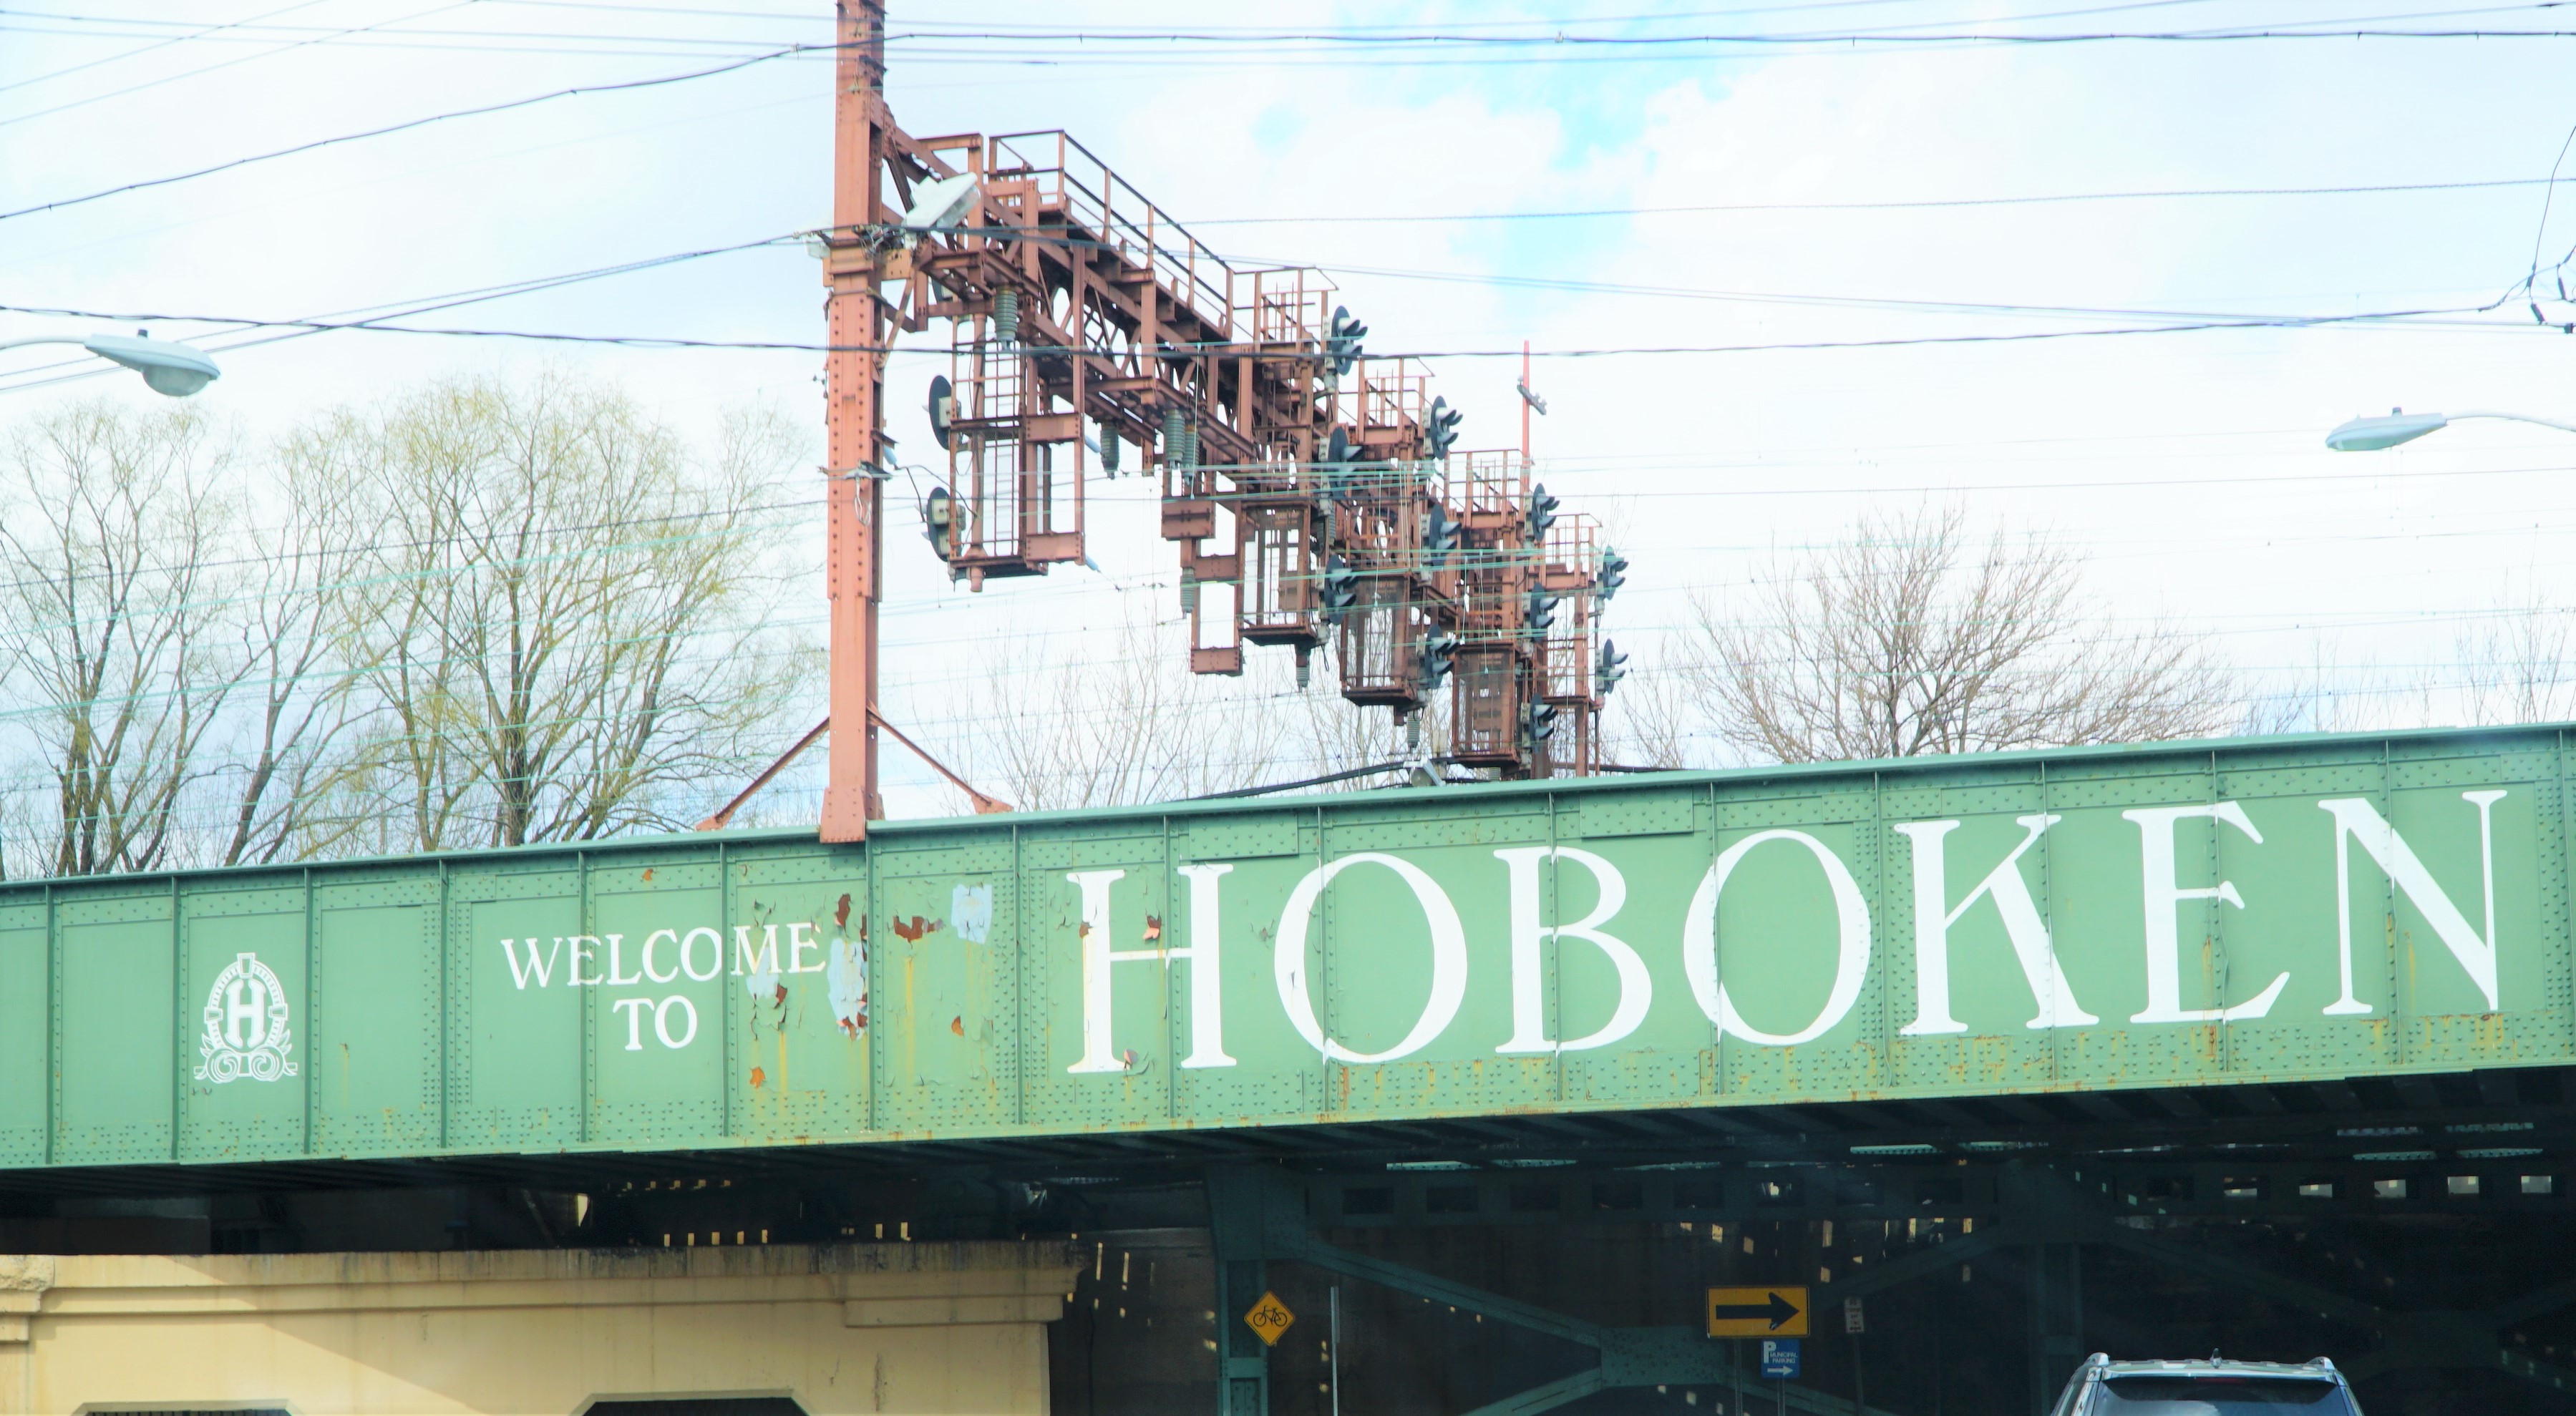 Welcome to Hoboken highway sign